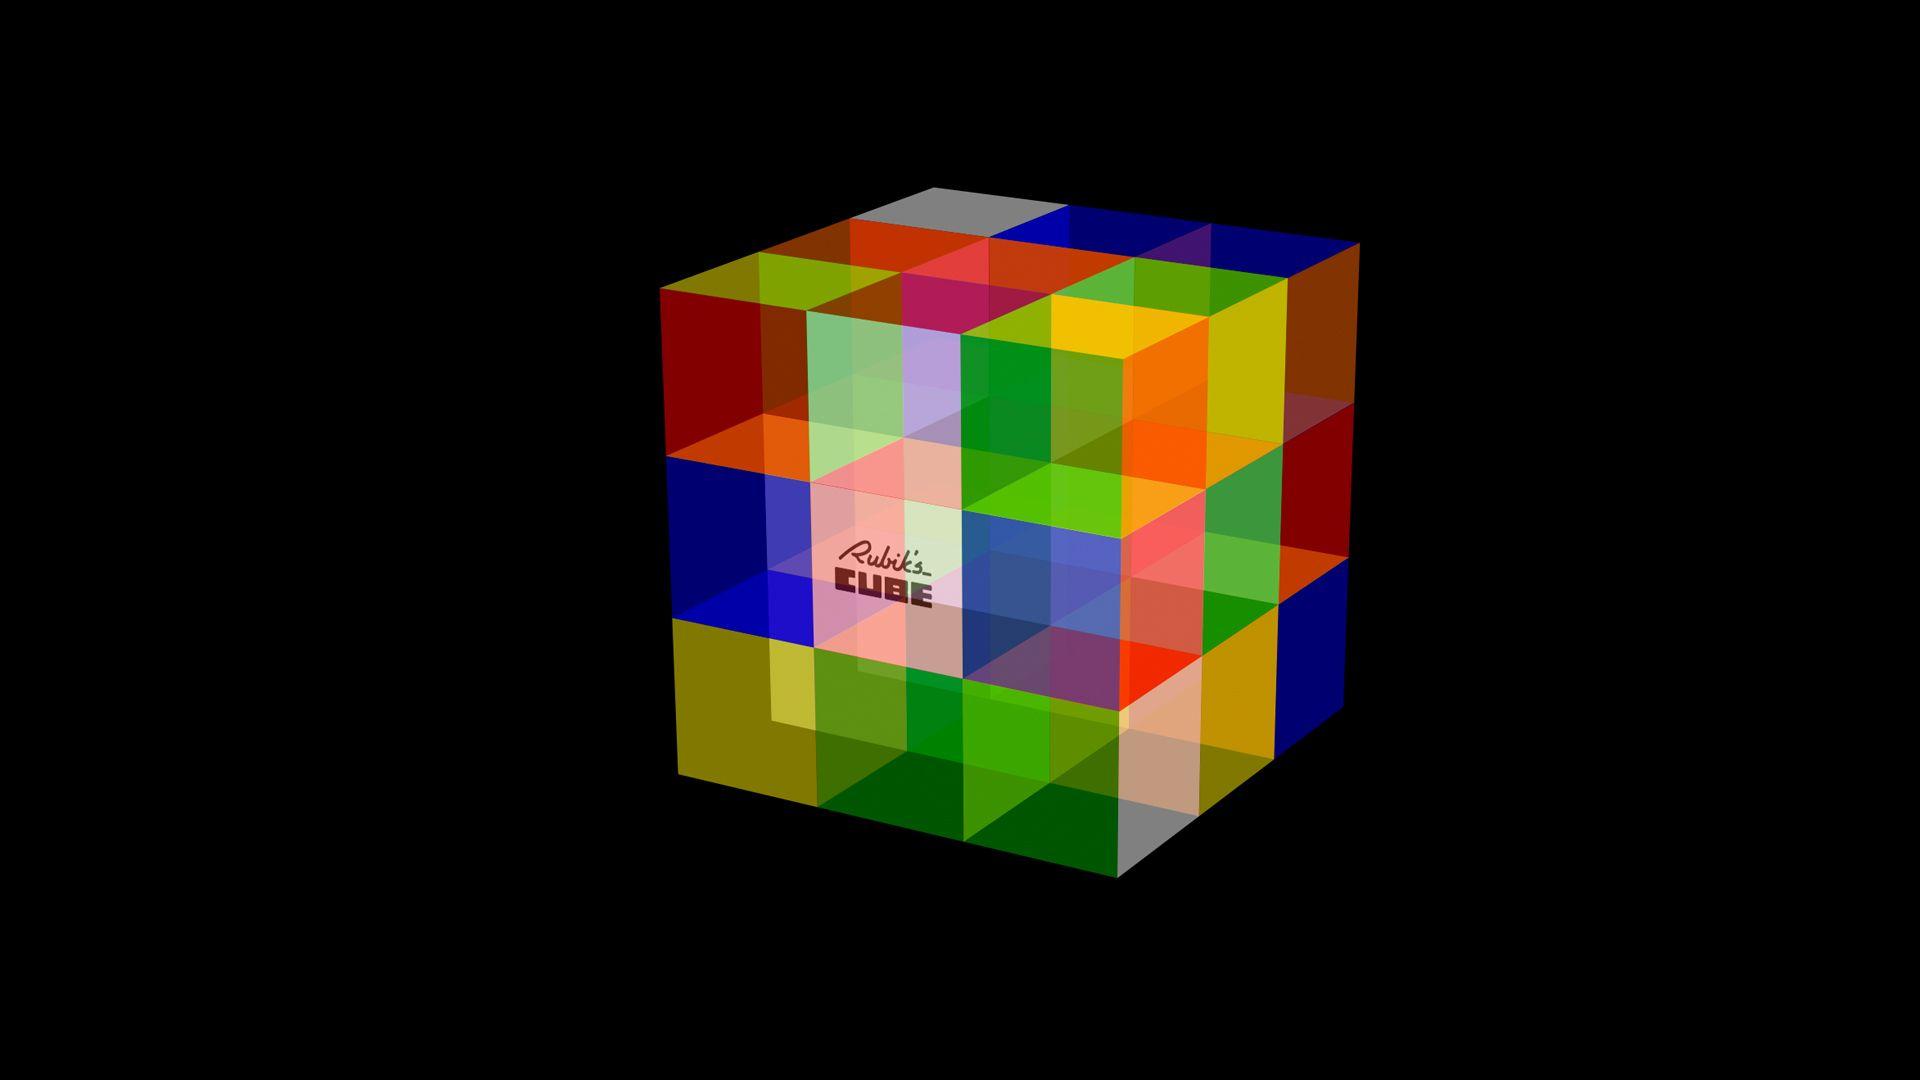 Rubix Cube Wallpaper